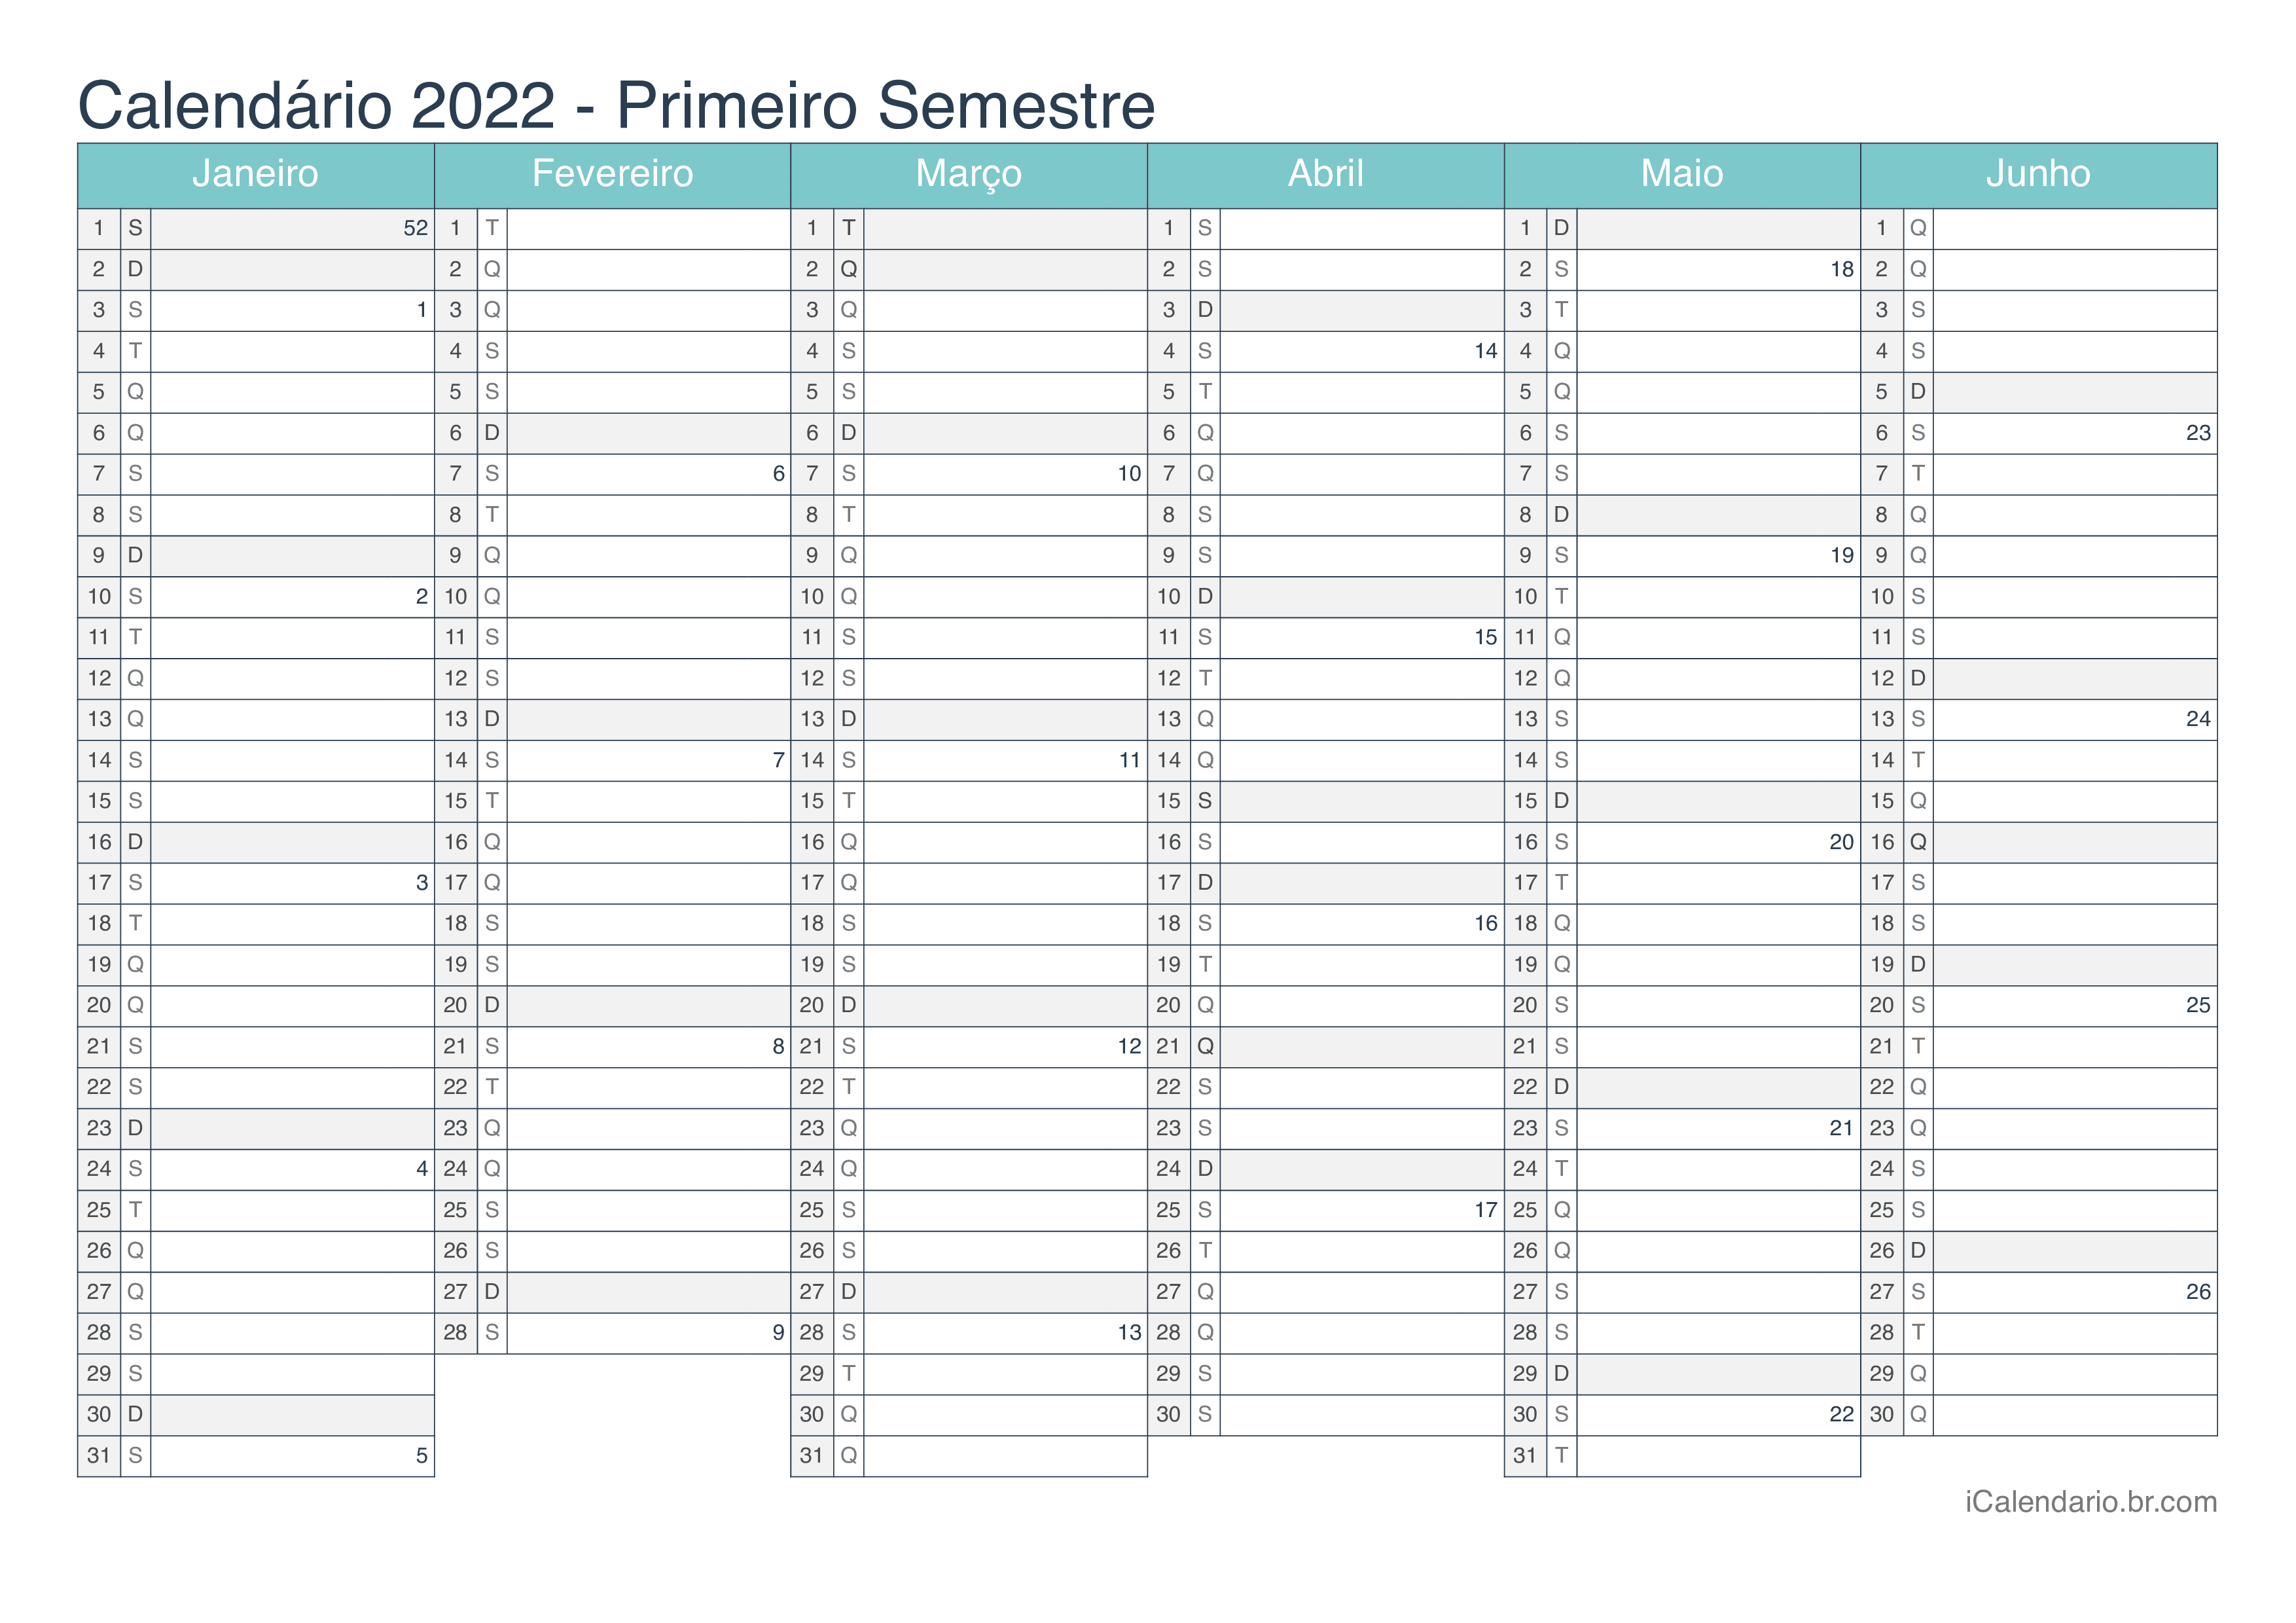 Calendário por semestre com números da semana 2022 - Turquesa